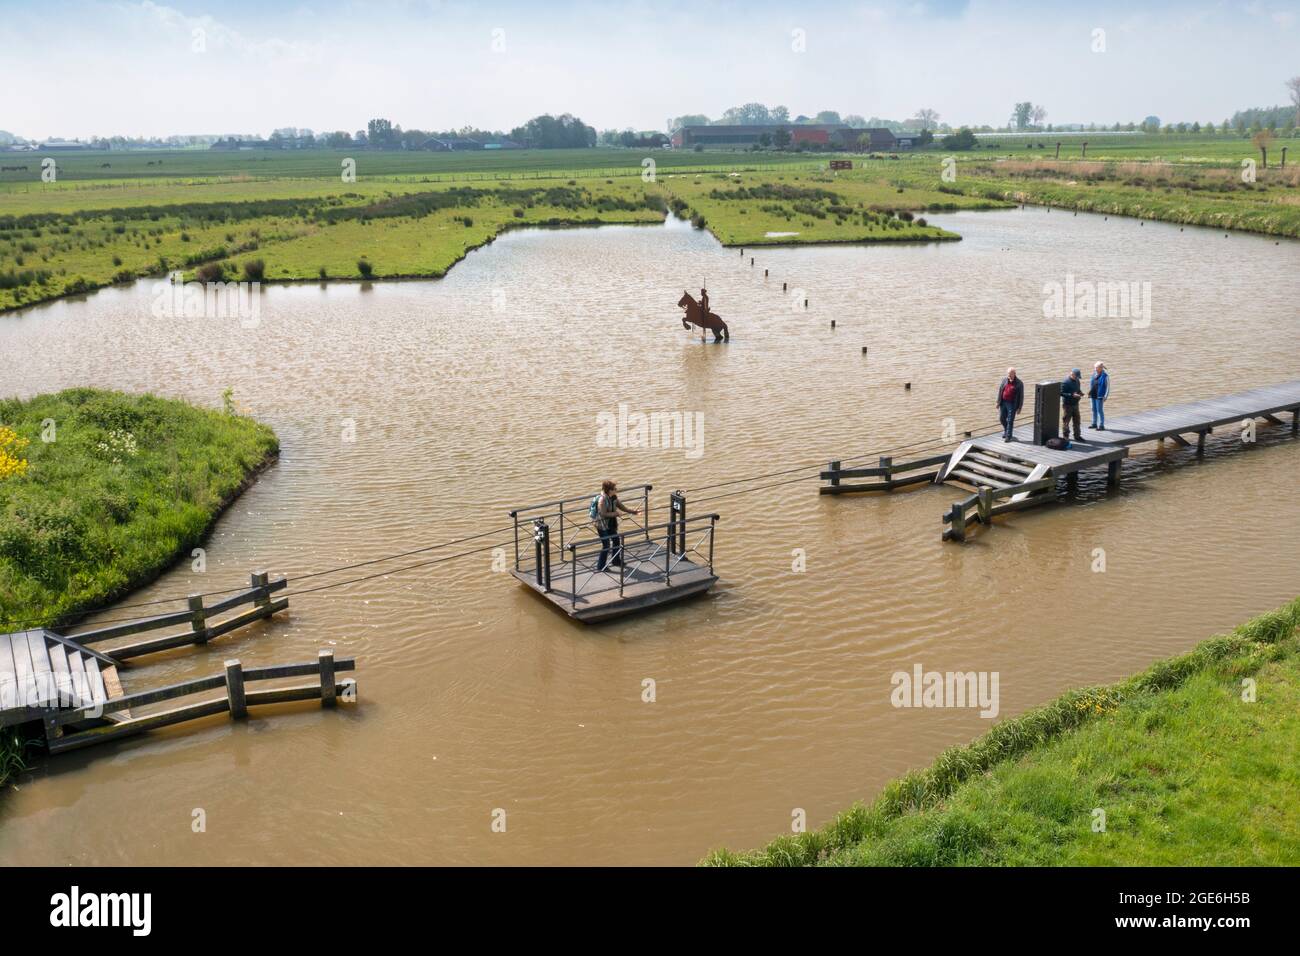 Niederlande, Schalkwijk. Überschwemmt-Feld, Teil der Neuen Niederländischen Wasserlinie. Unesco-Weltkulturerbe. Niederländische Wasserschutzlinien. Kunstwerke: Ôthe Stockfoto